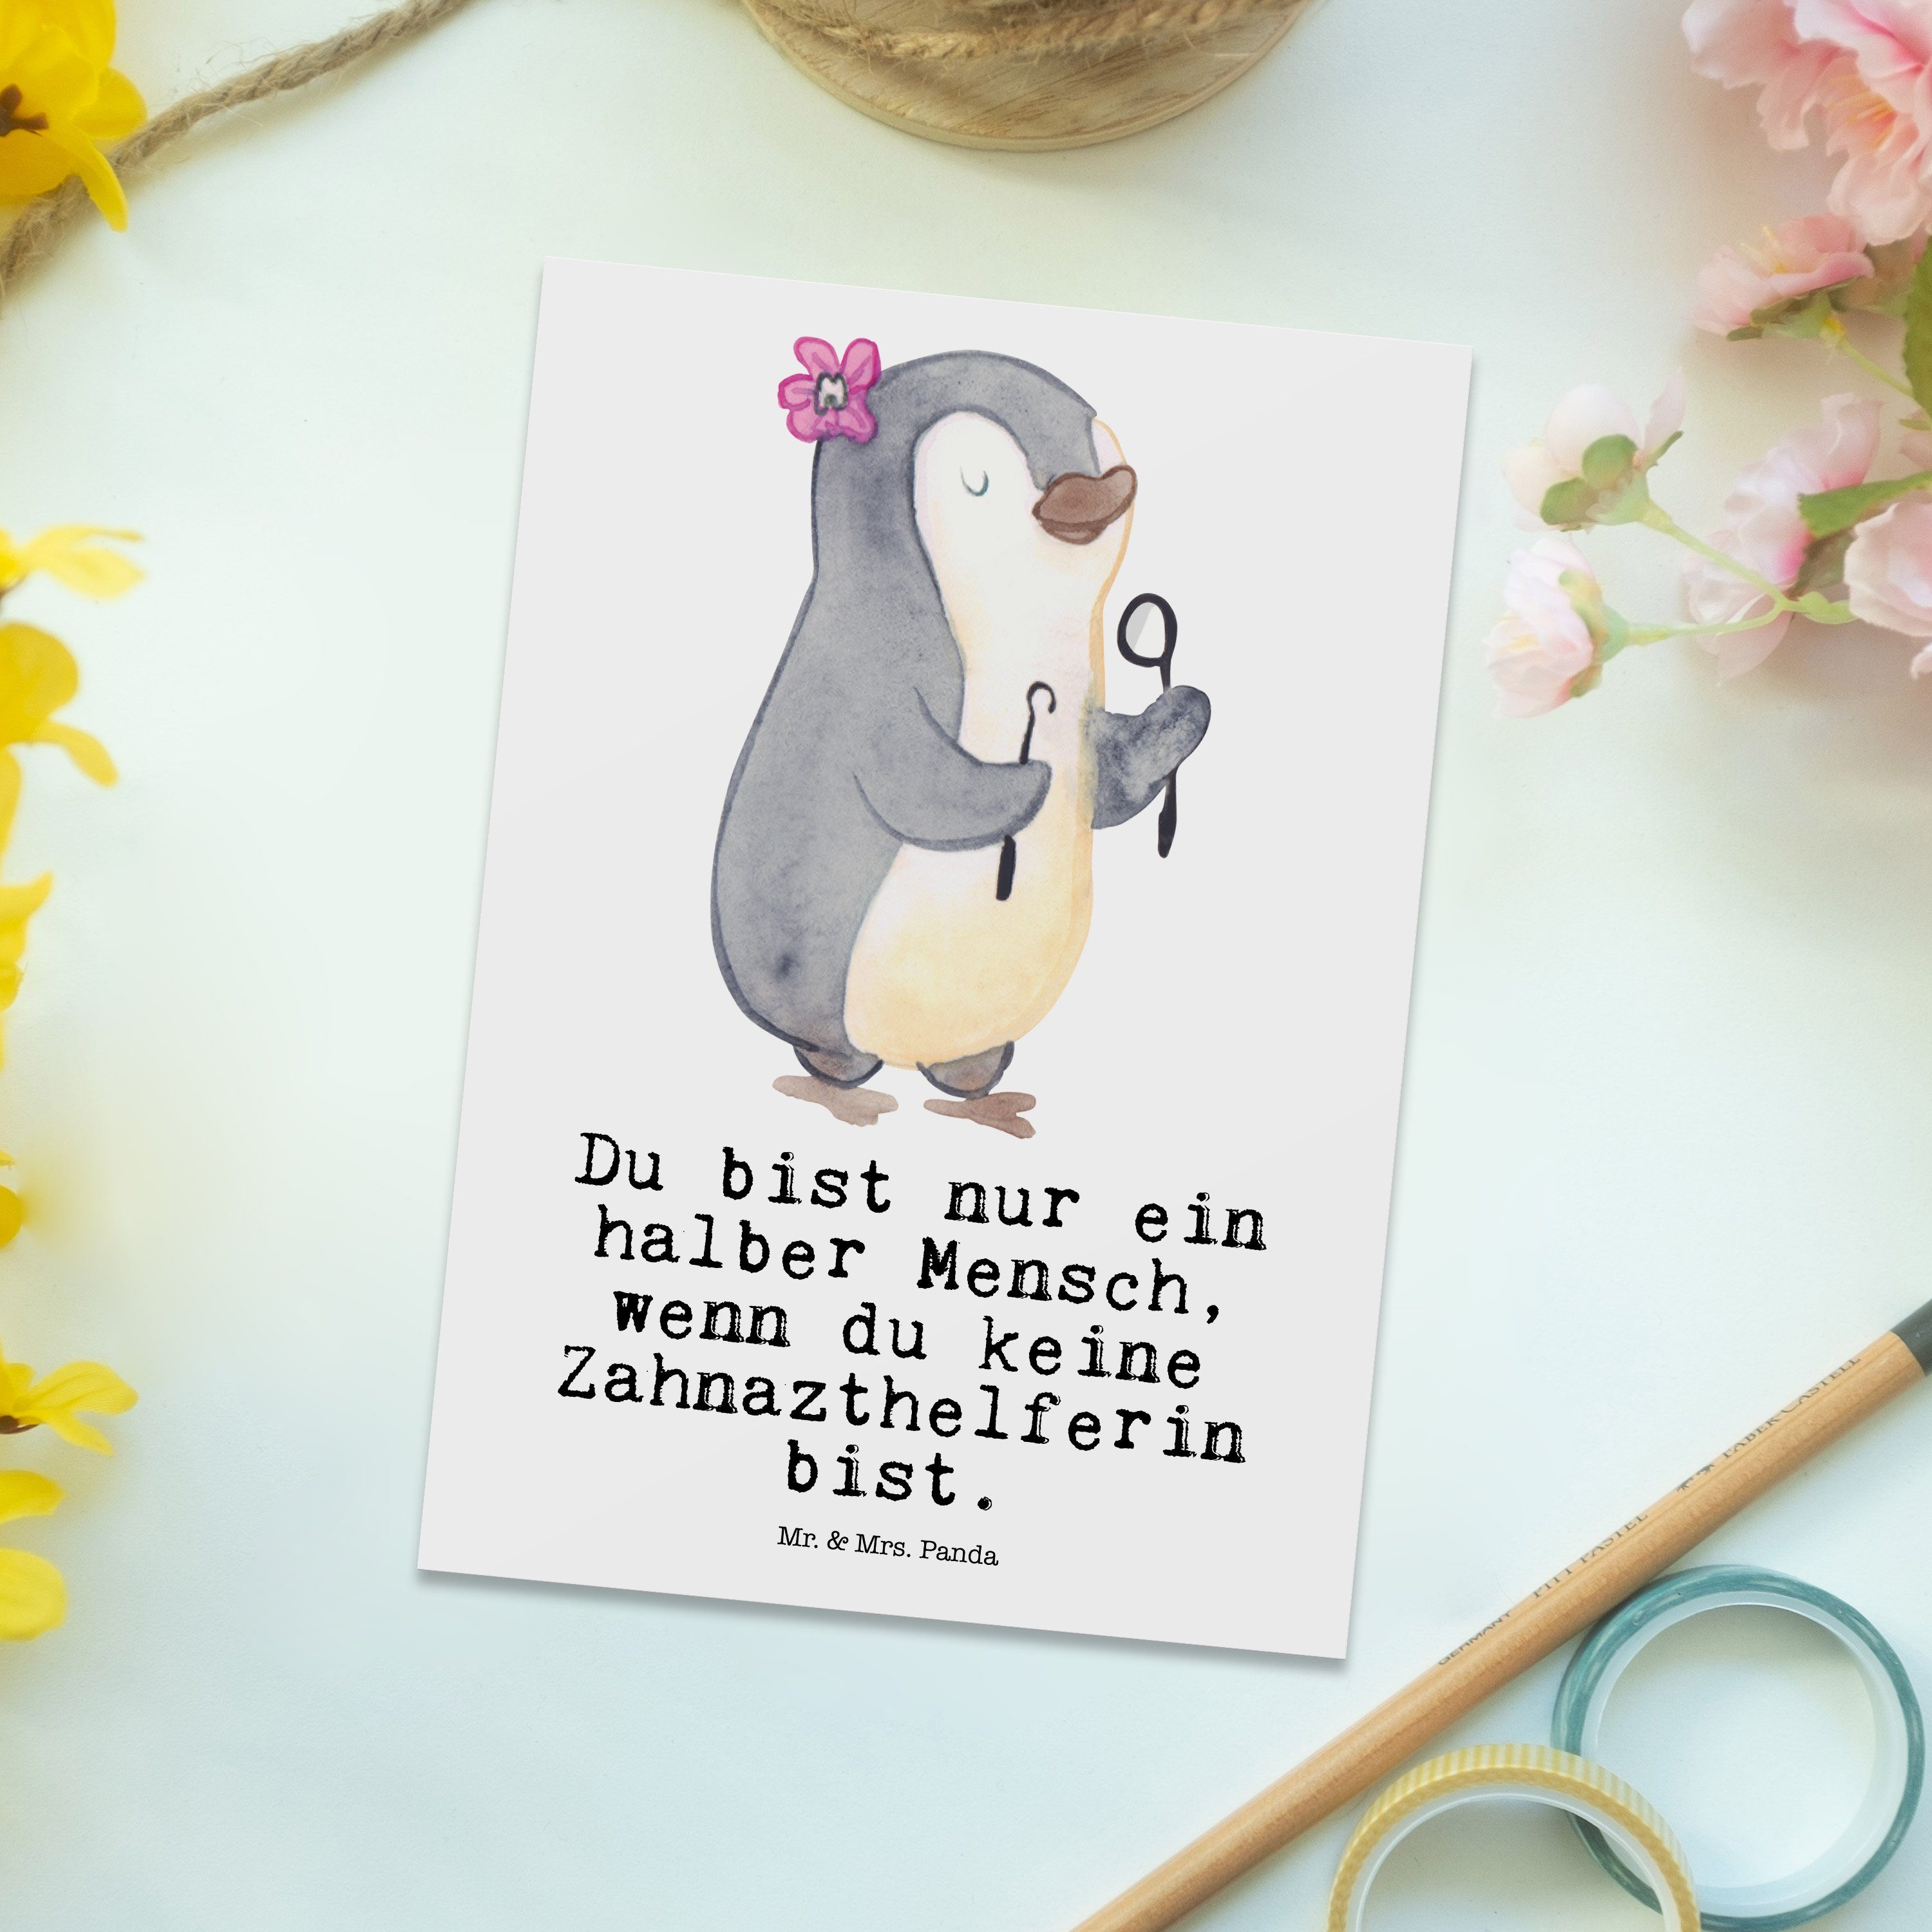 Mr. & Mrs. Panda Postkarte Geschenk, - Danke, Einladung, Zahnarzthelferin - mit Grußka Herz Weiß